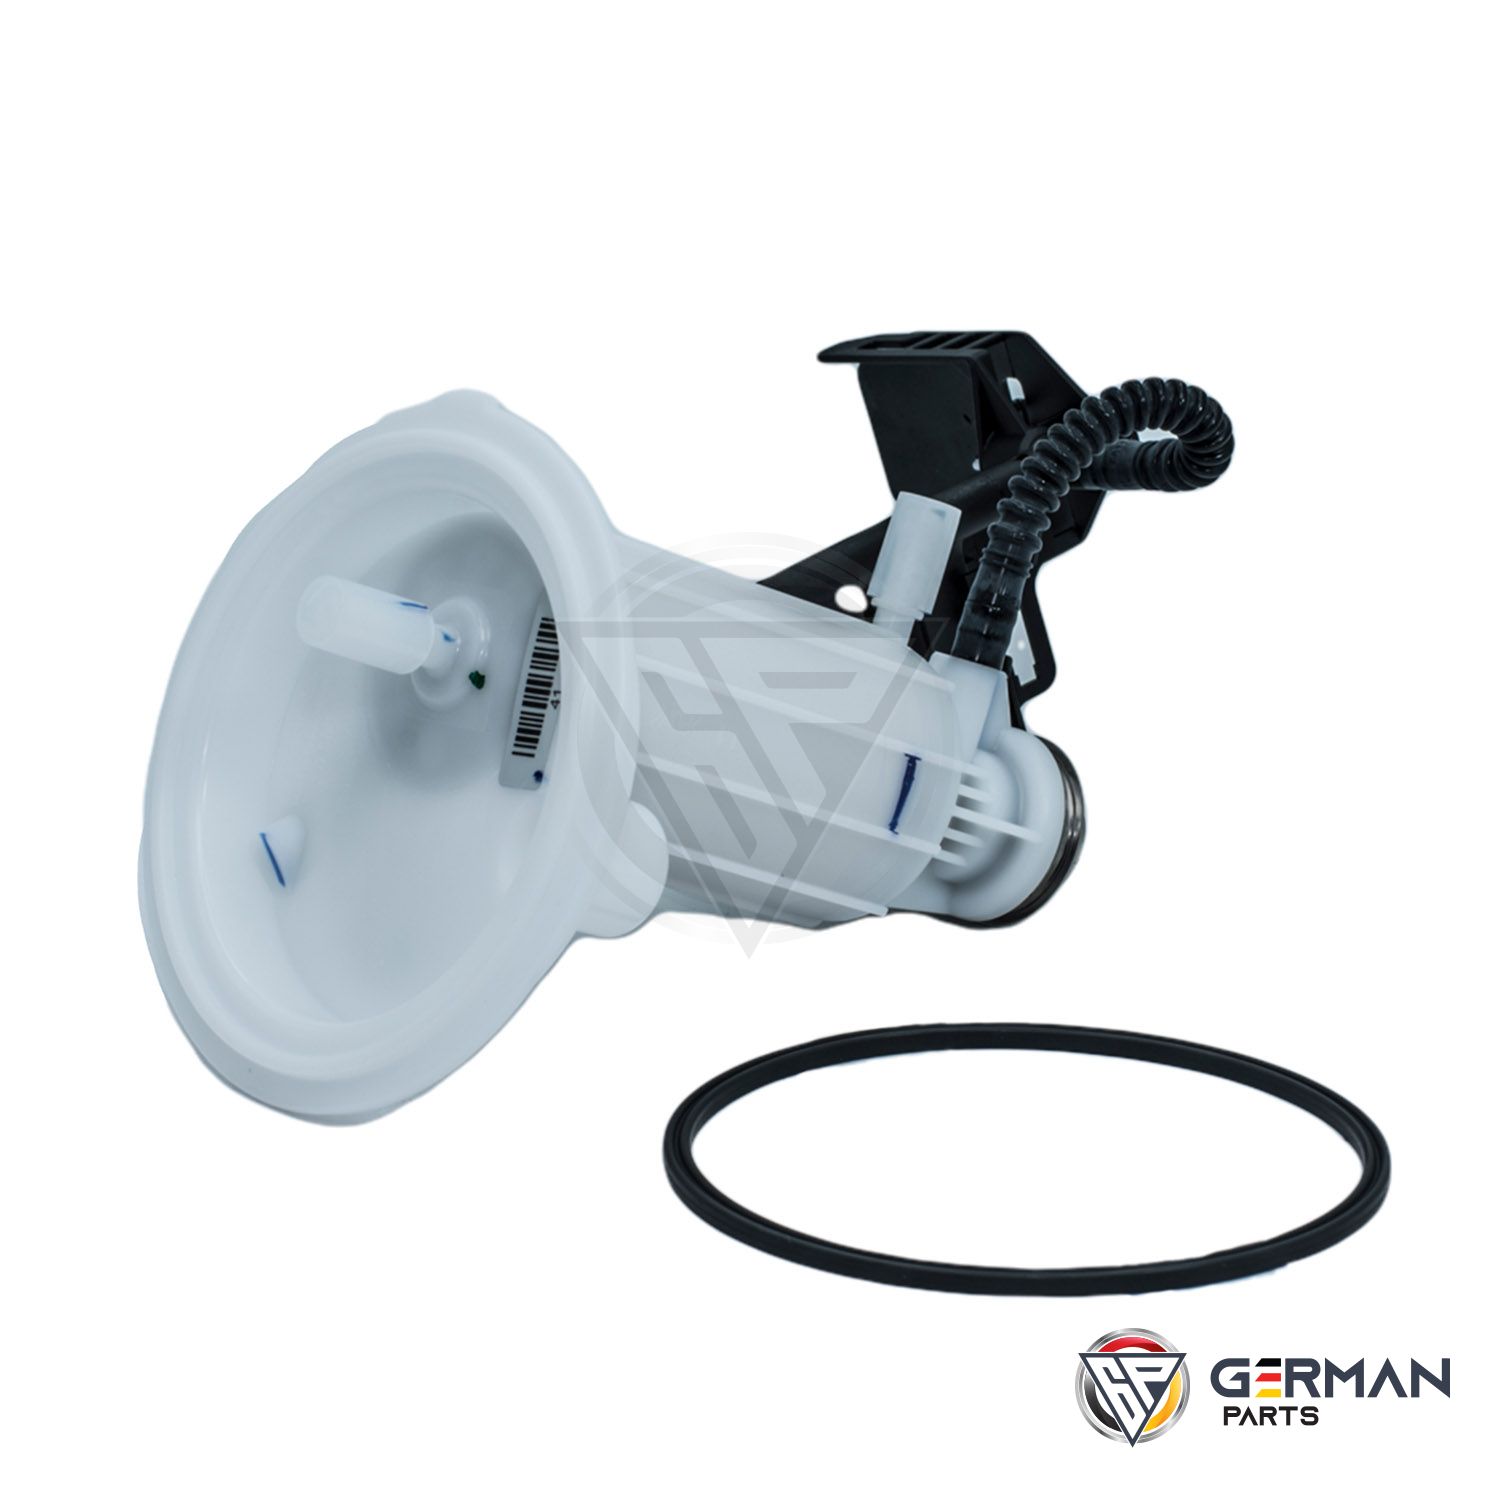 Buy BMW Fuel Filter 16117373514 - German Parts